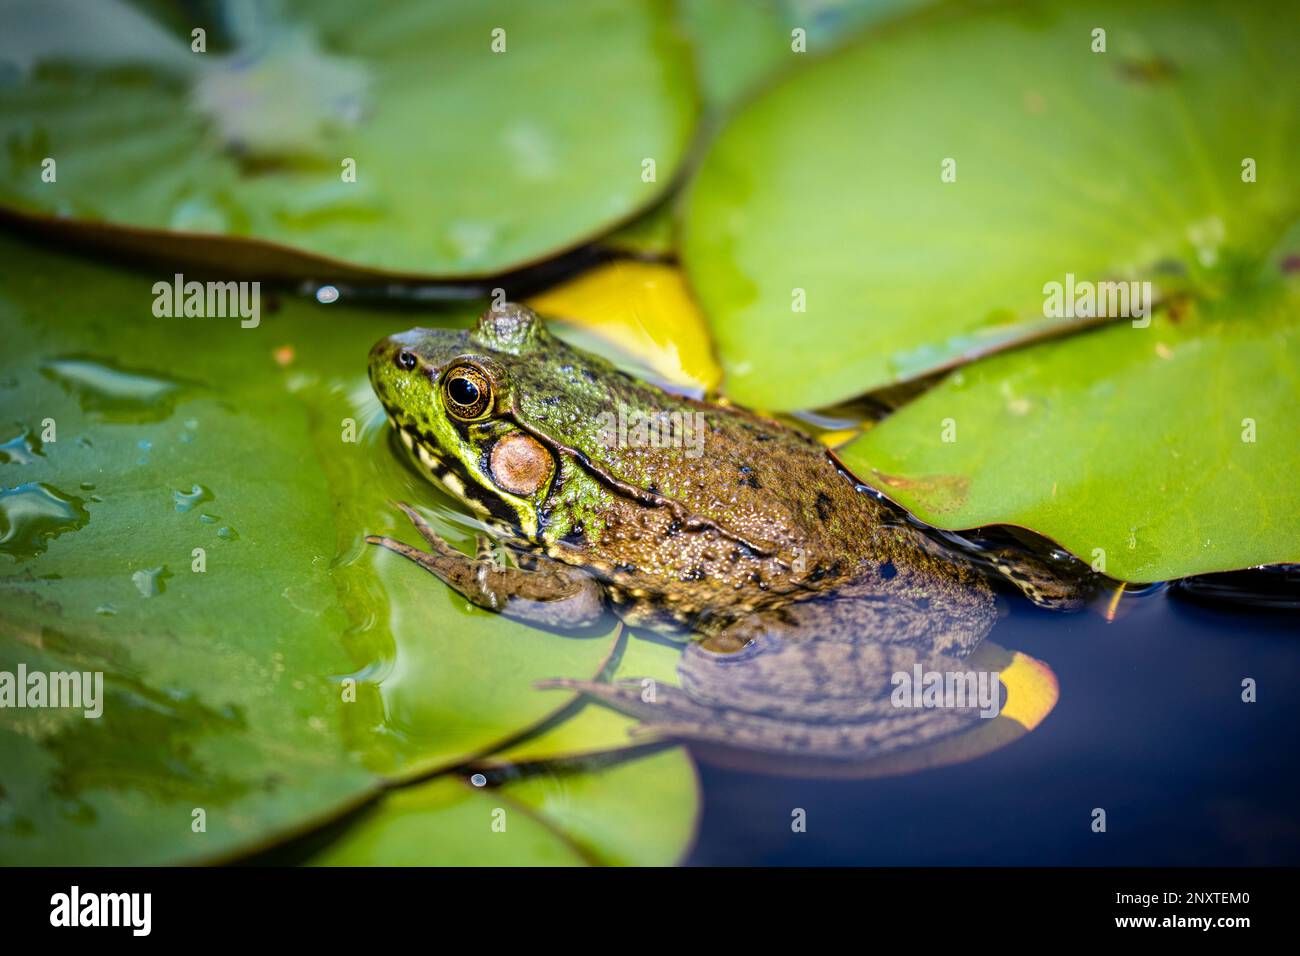 Nahaufnahme eines gewöhnlichen grünen Frosches in Wasser mit Seerosenpolstern. Stockfoto